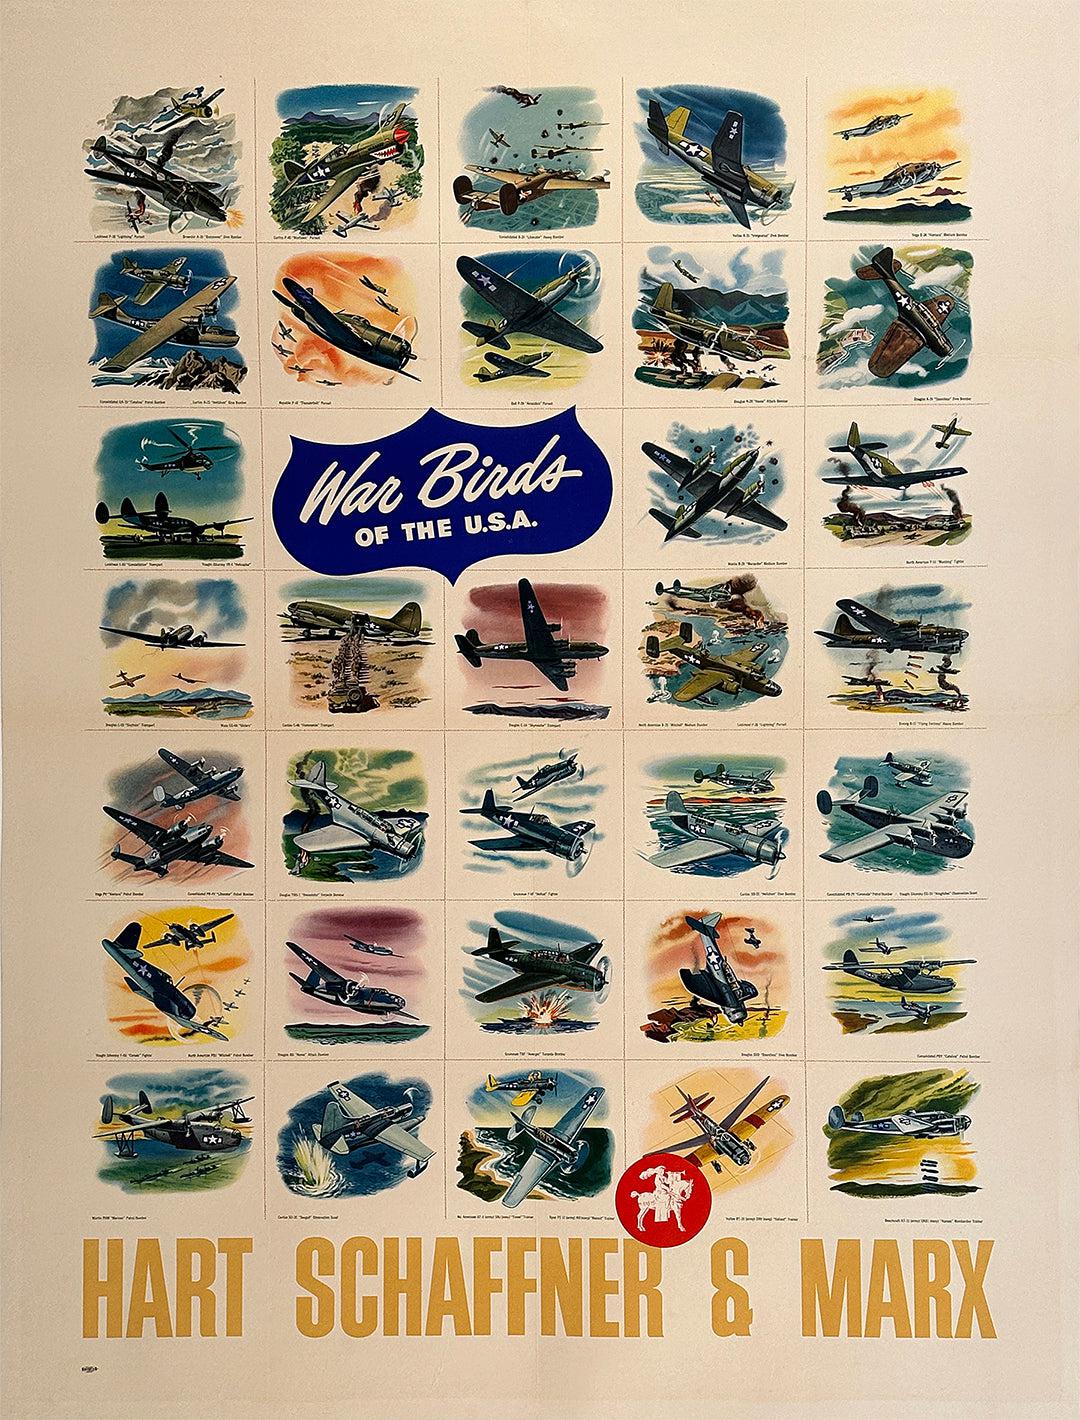 Original Vintage WWII War Birds of the USA Poster Hart Schaffner Marx c1943  – The Ross Art Group